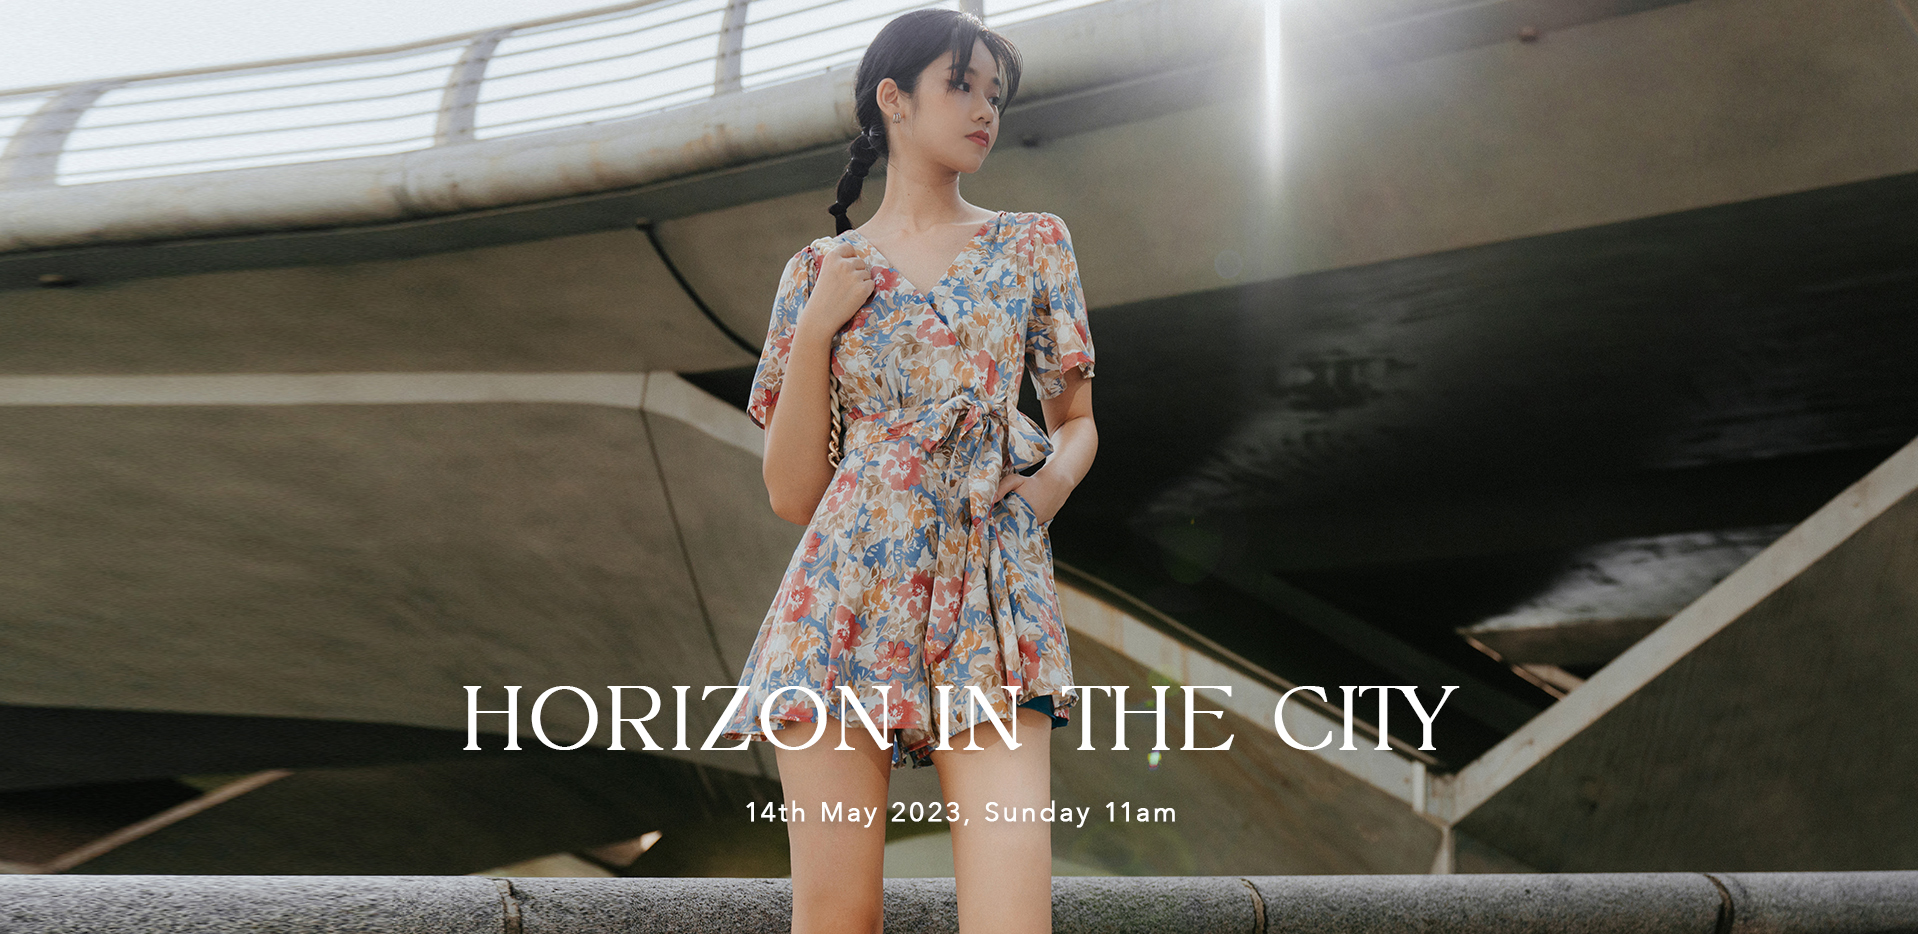 HORIZON IN THE CITY